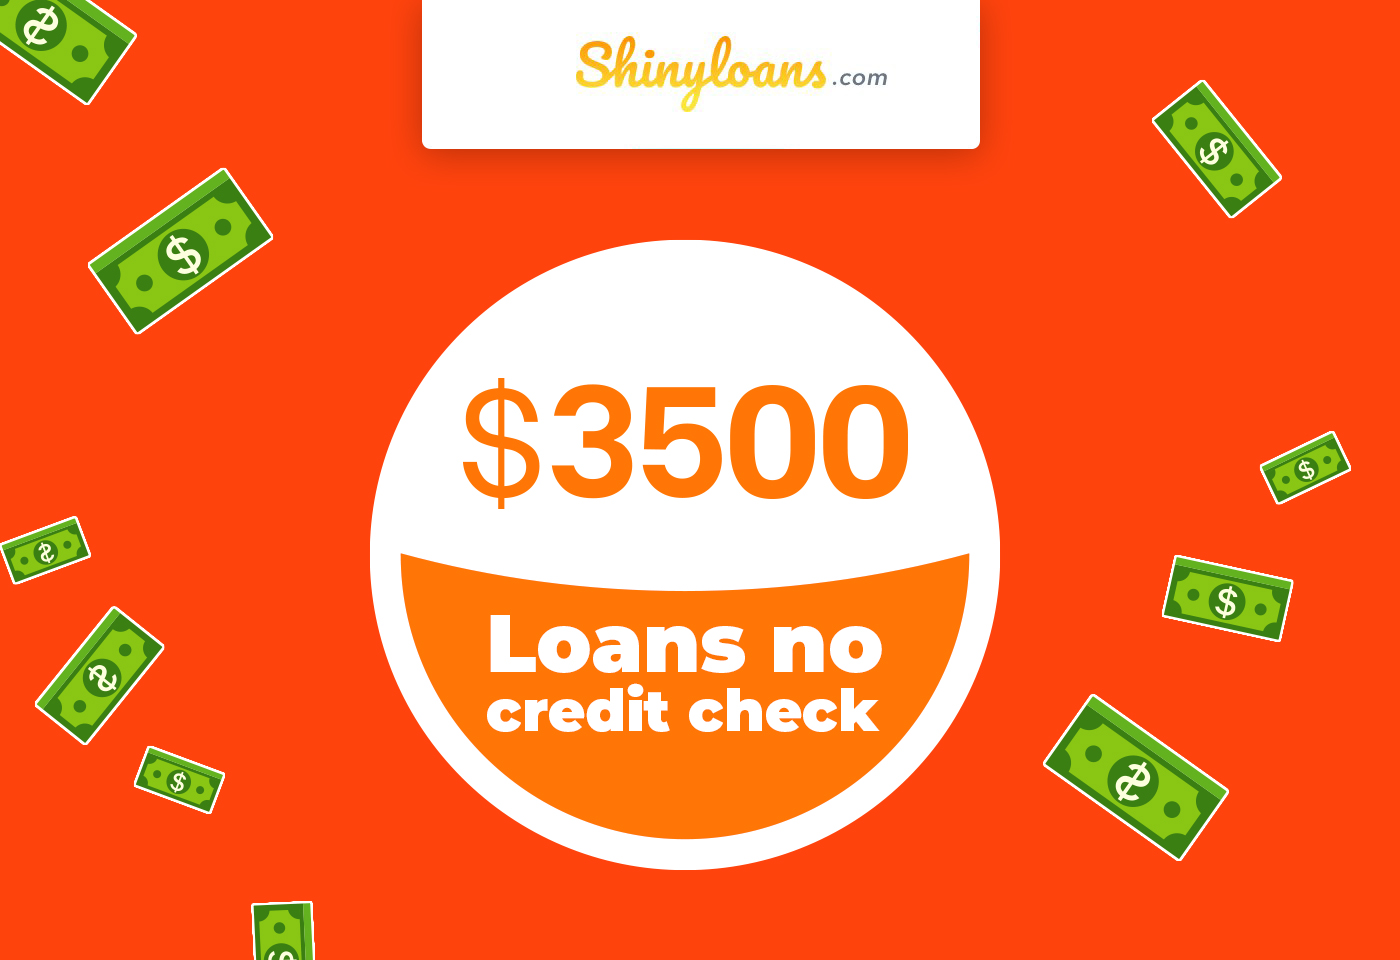 $3500 Loans No Credit Check